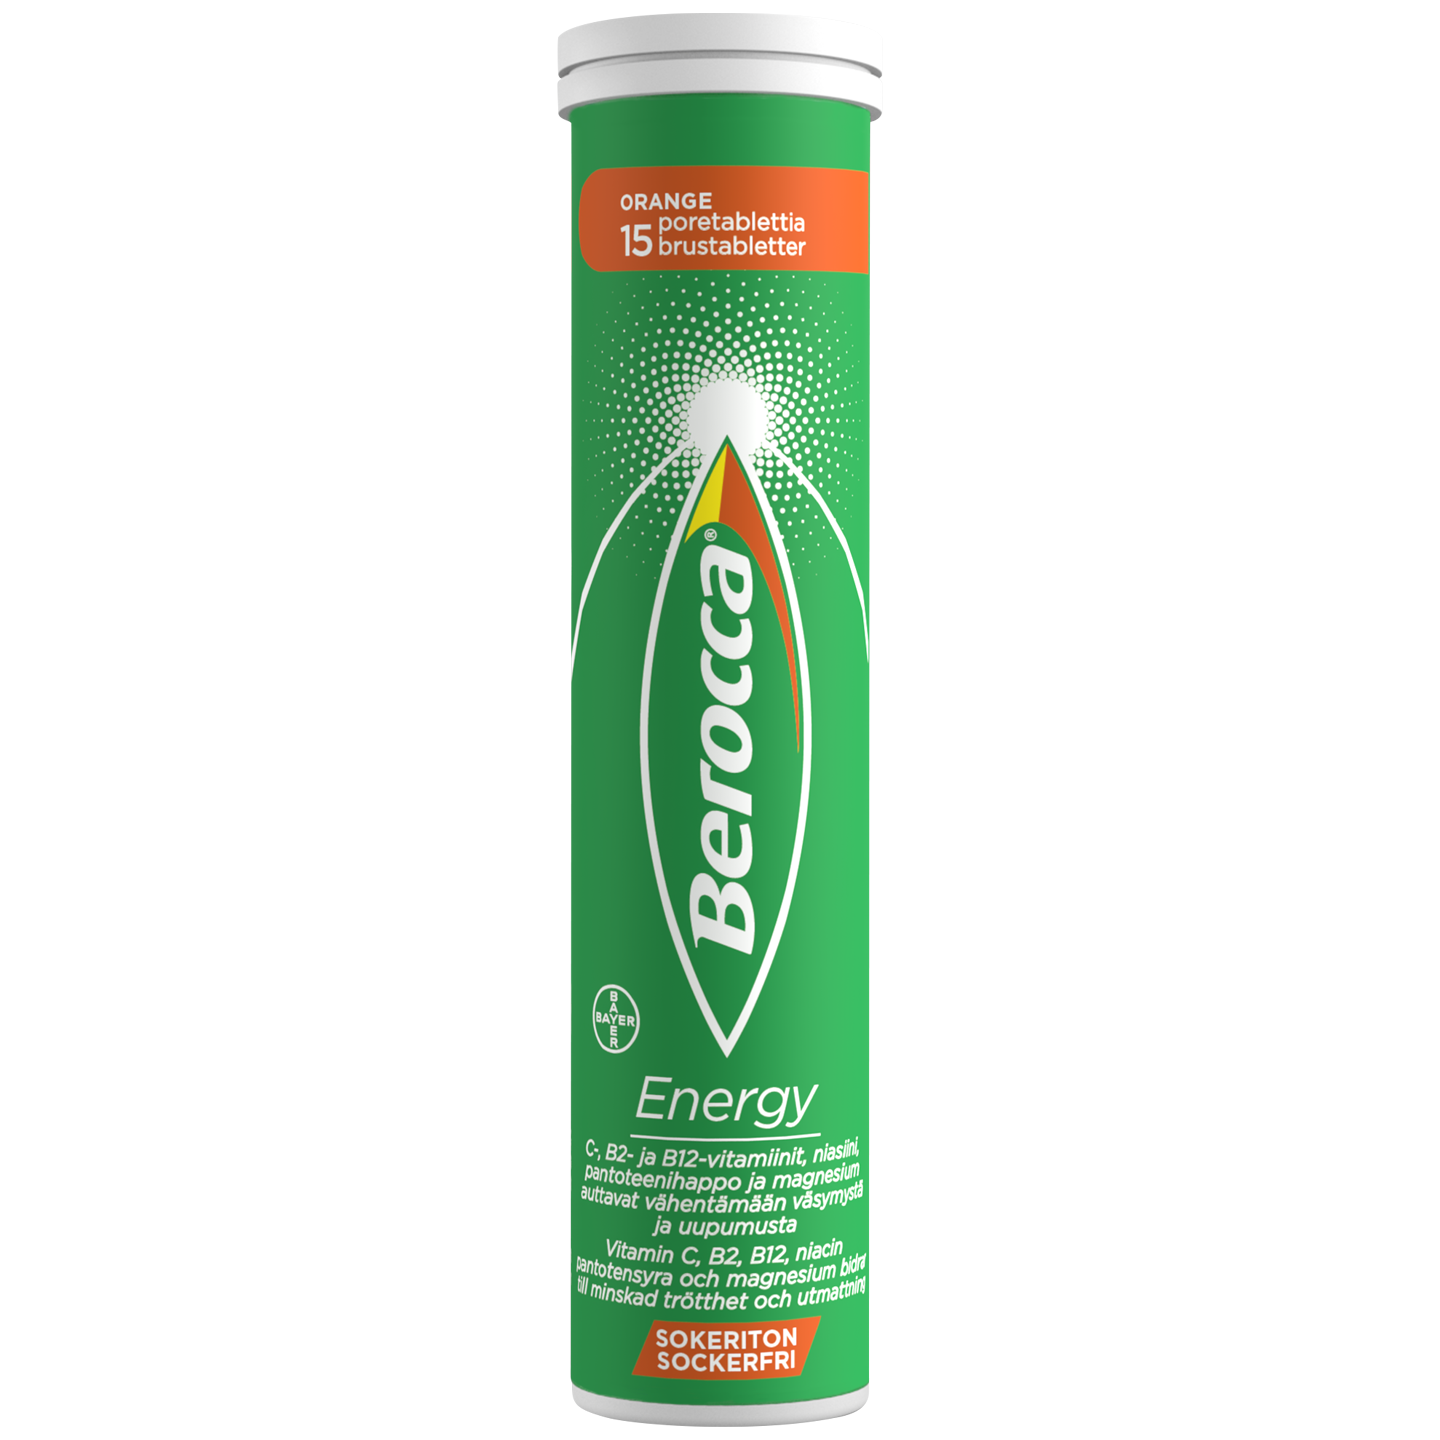 Berocca Energy Orange -poretabletit 